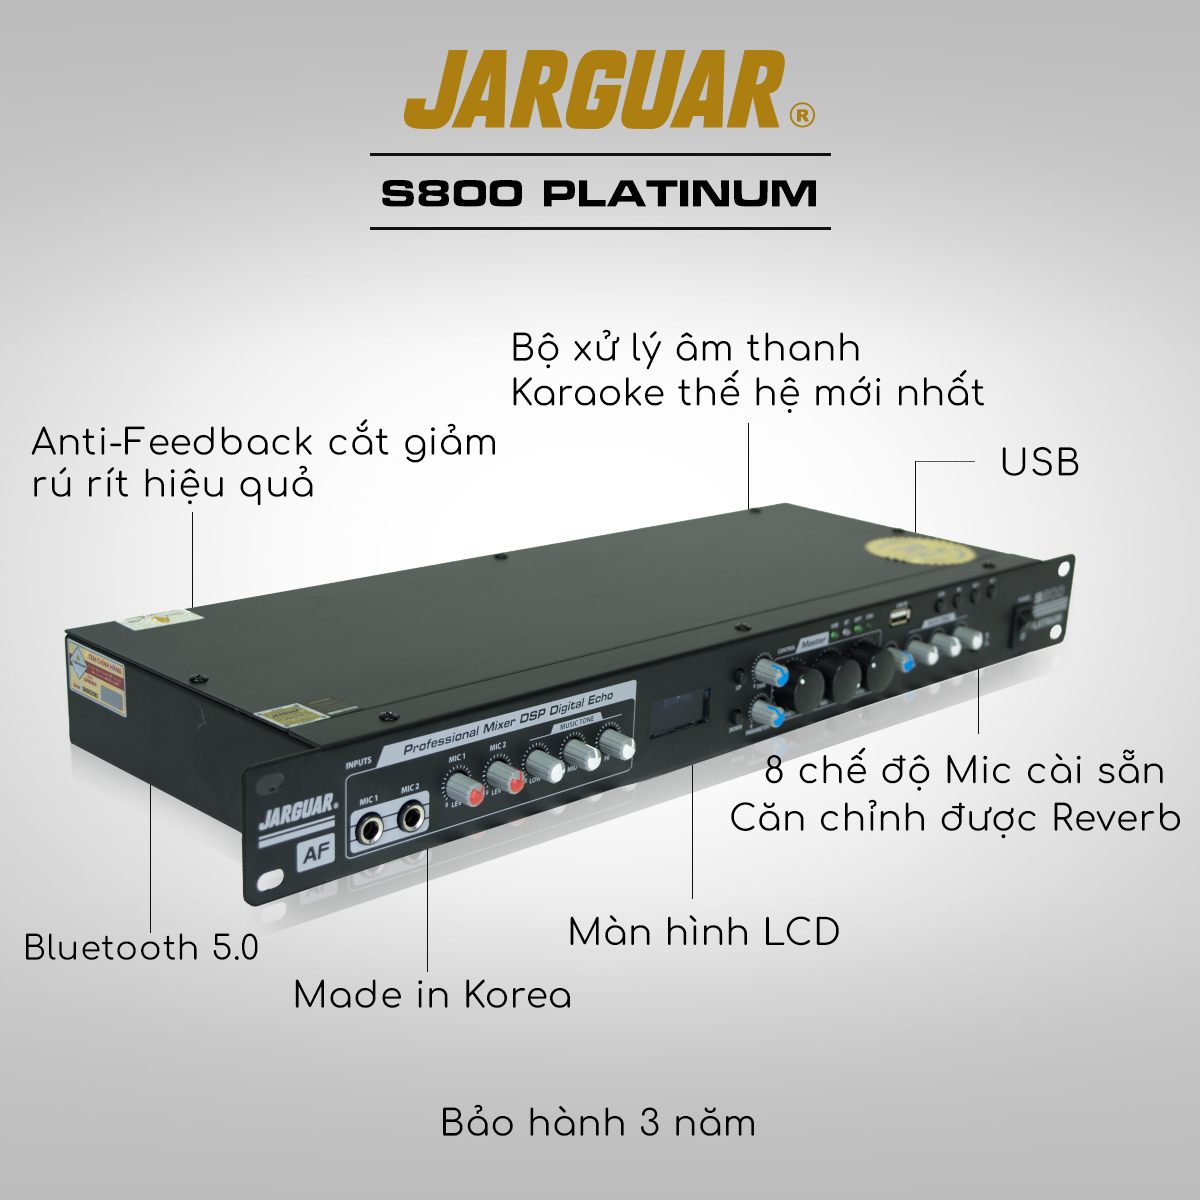 vang cơ Jarguar S800